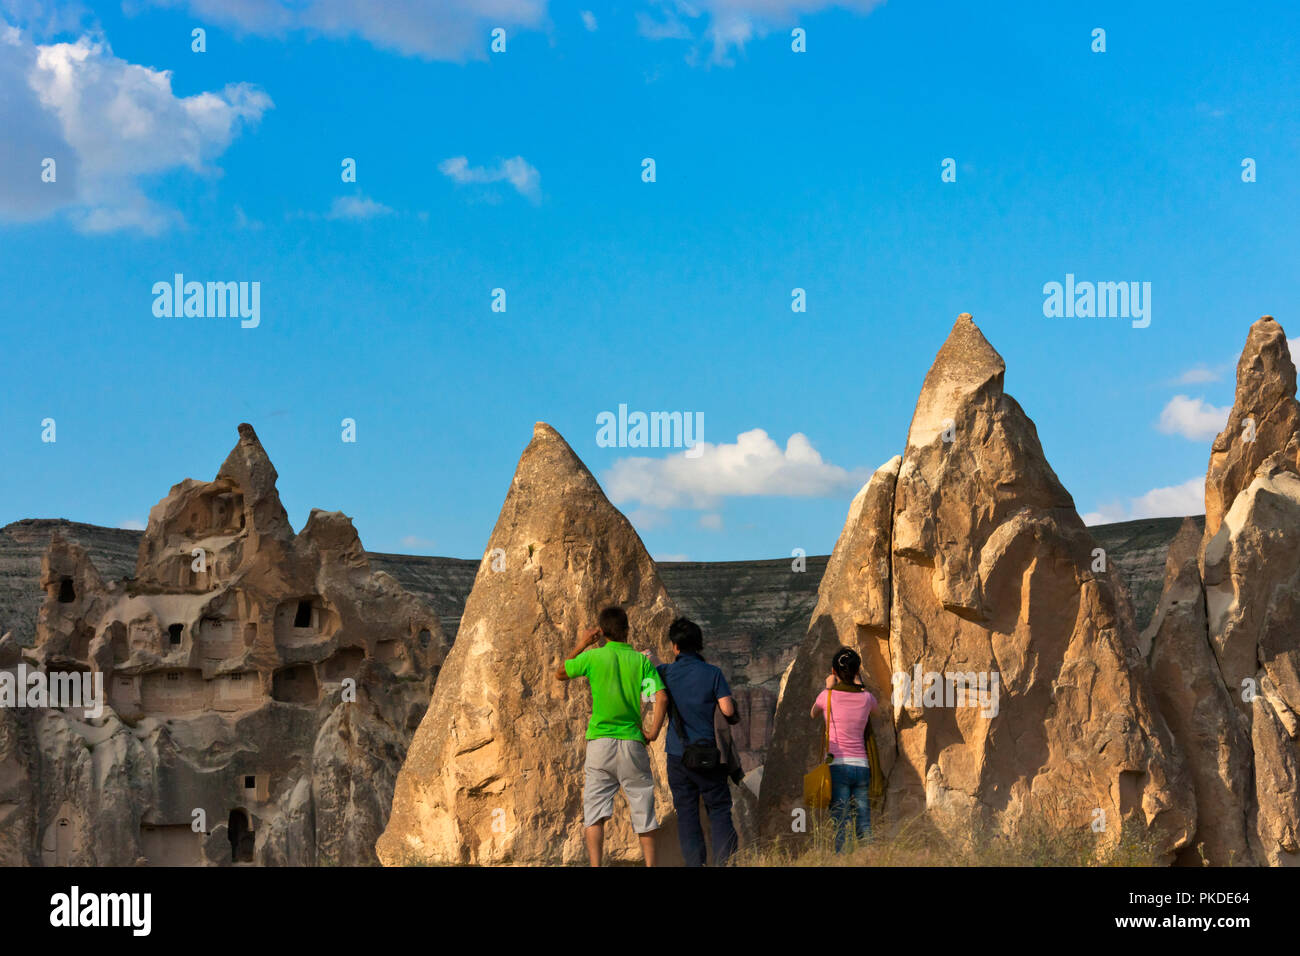 Les touristes regardant des maisons creusées dans les formations rocheuses de la vallée de Goreme, Cappadoce, Turquie (site du patrimoine mondial de l'UNESCO) Banque D'Images